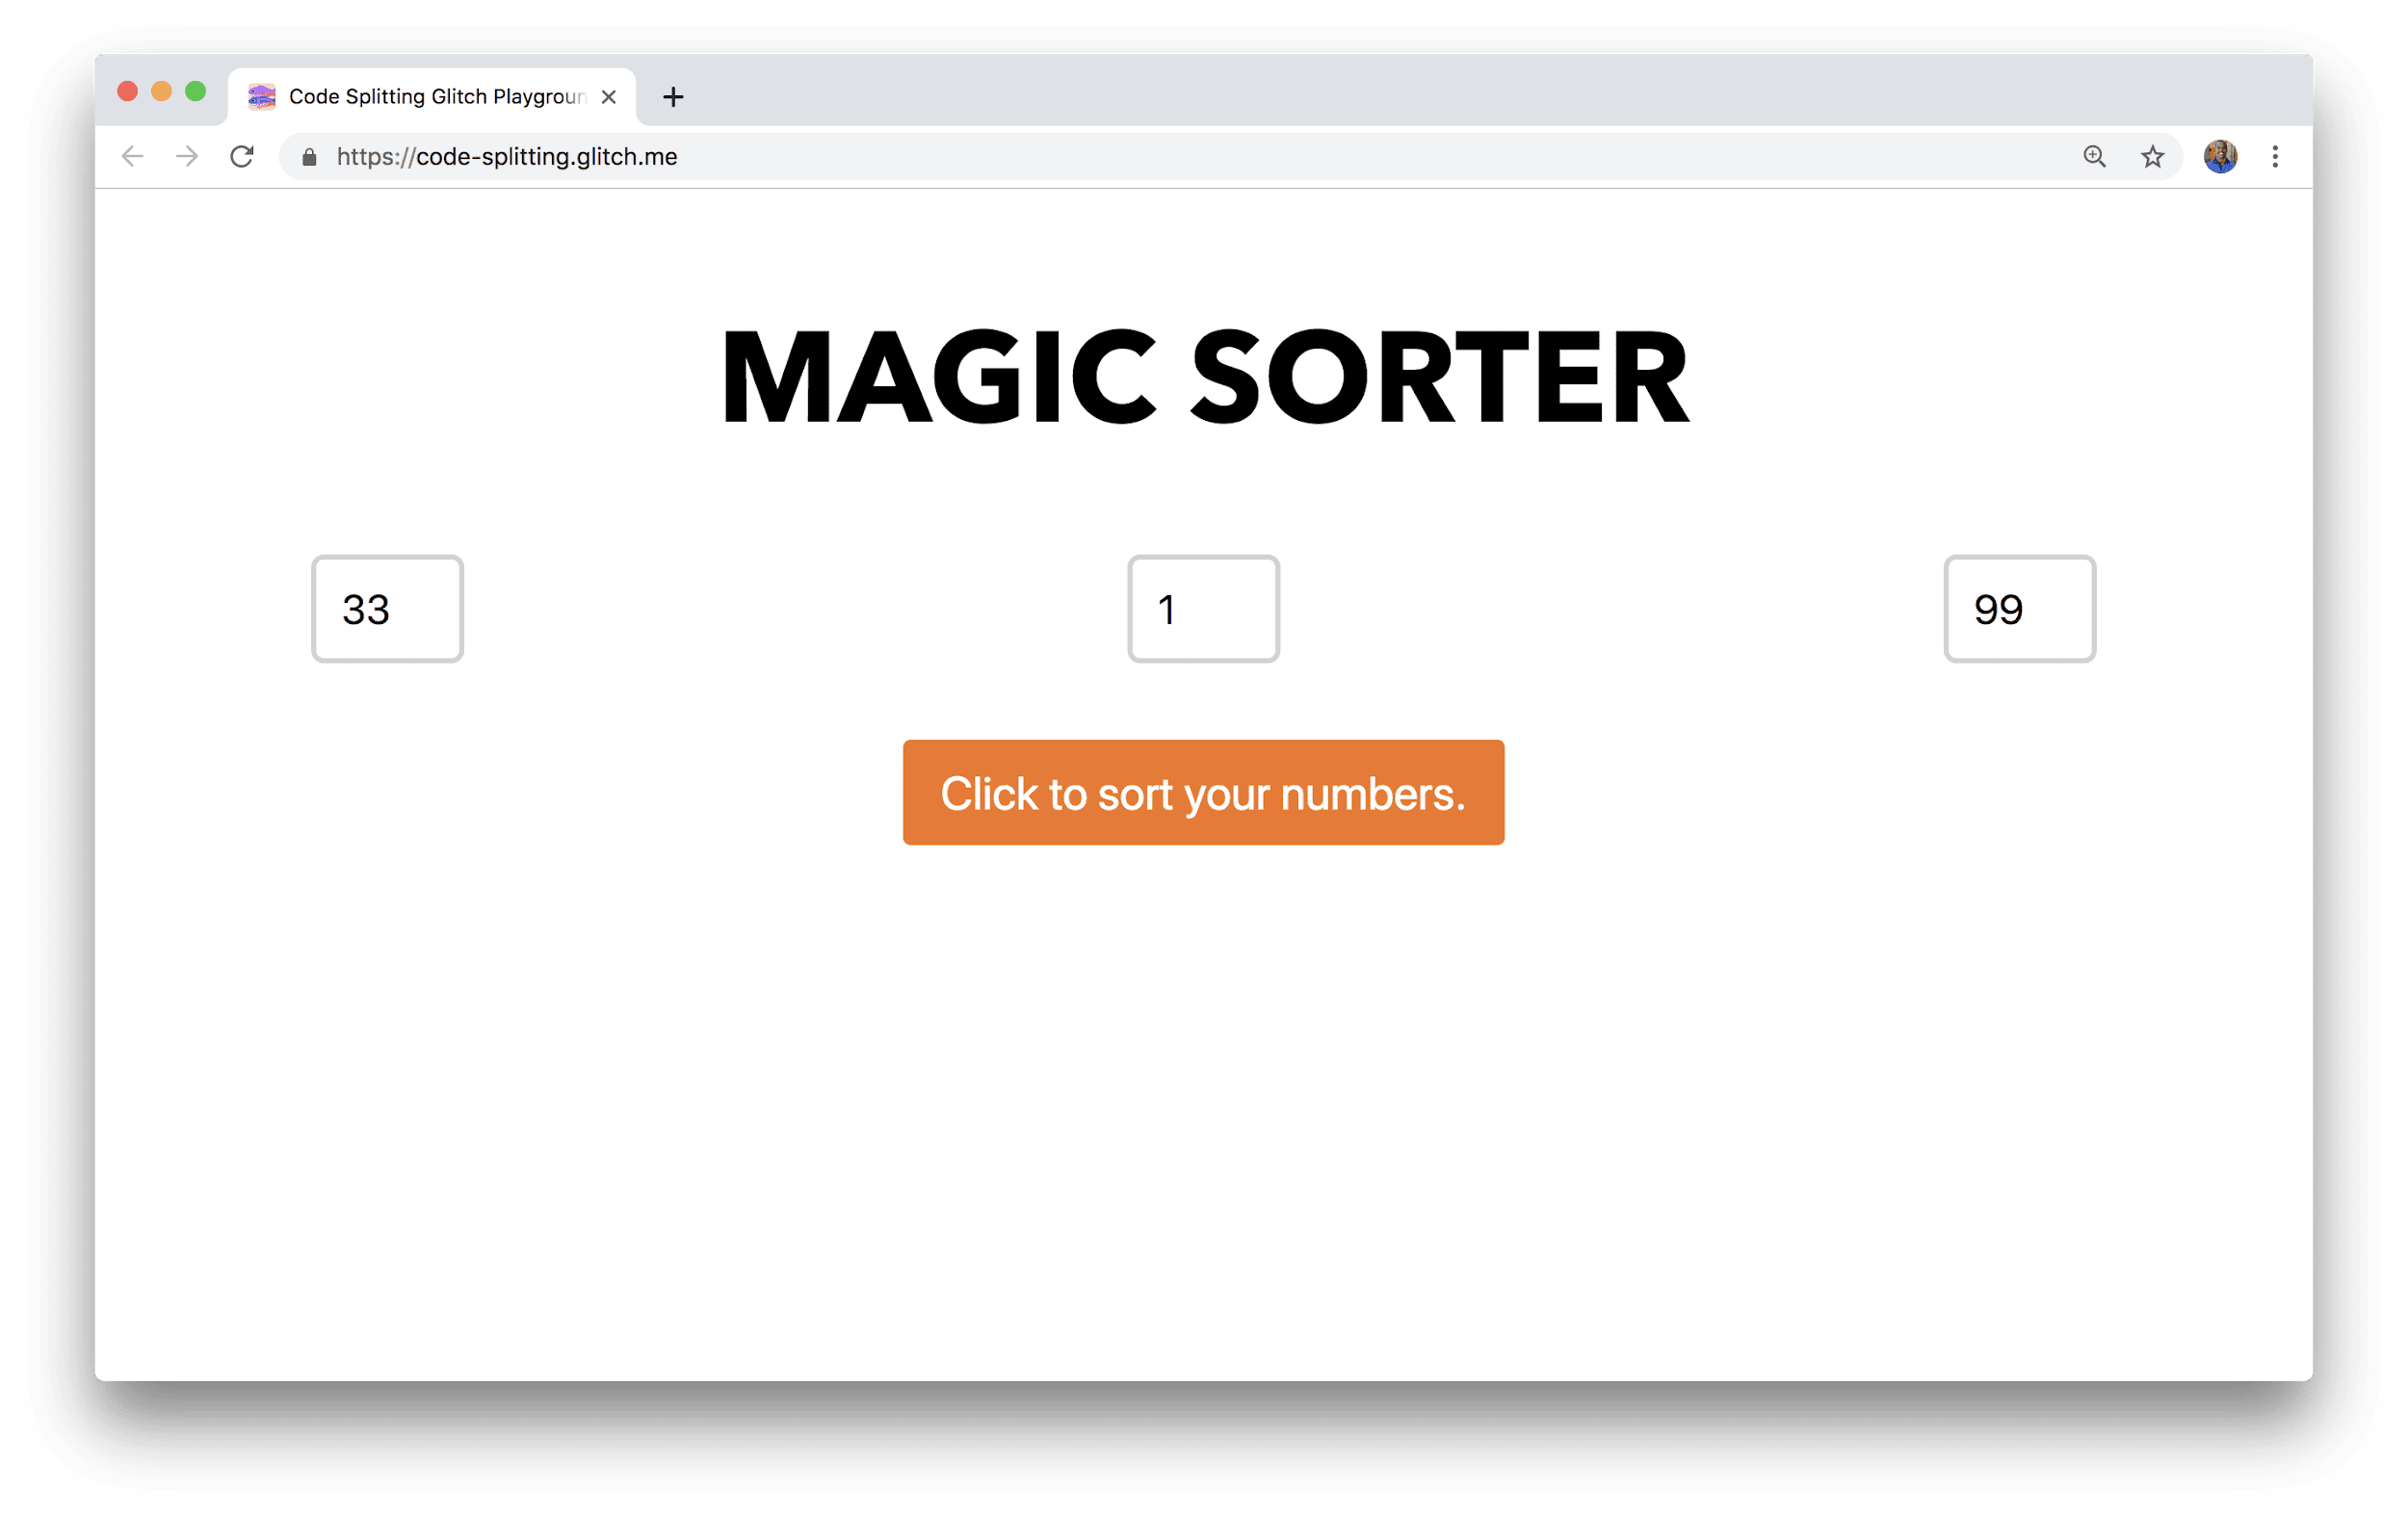 一个浏览器窗口显示了一个名为 Magic Sorter 的应用，该应用有三个用于输入数字的字段和一个排序按钮。